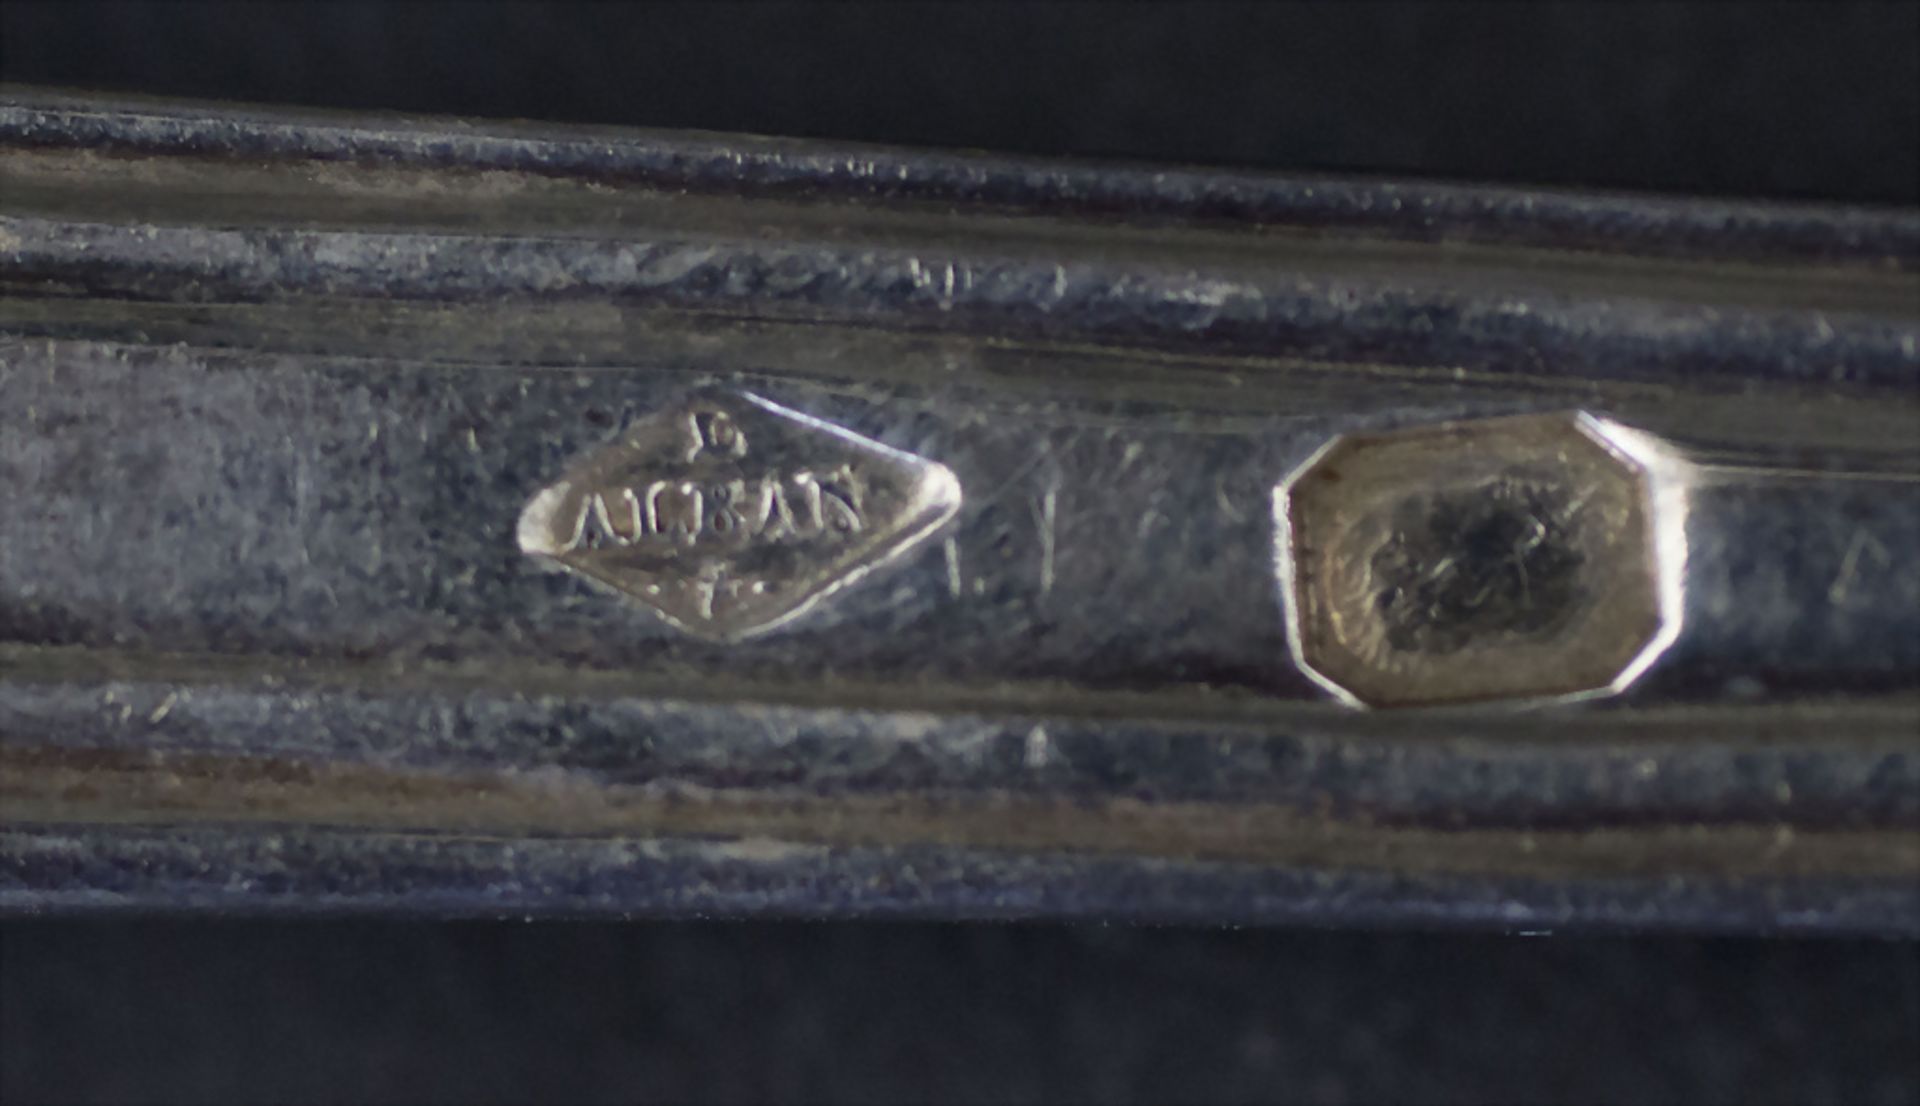 24-tlg. Silberbesteck / A 24-piece set of silver cutlery, Louis Nicolas Alban, Paris, 1834-1839 - Image 7 of 7